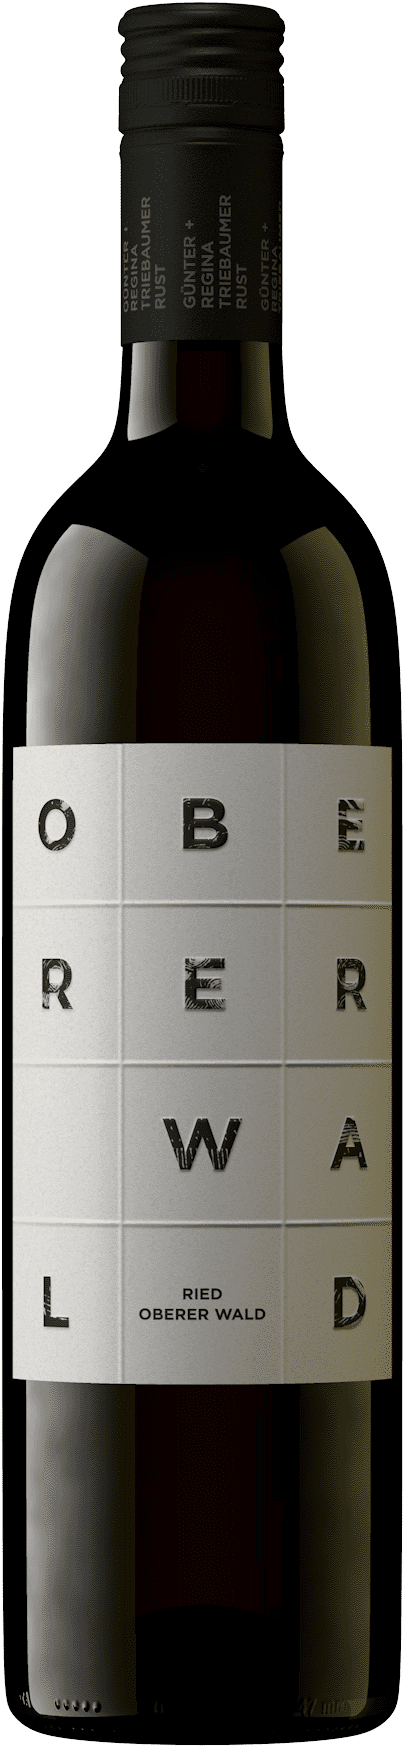 2020 Ried Oberer Wald Qualitätswein 0.75l